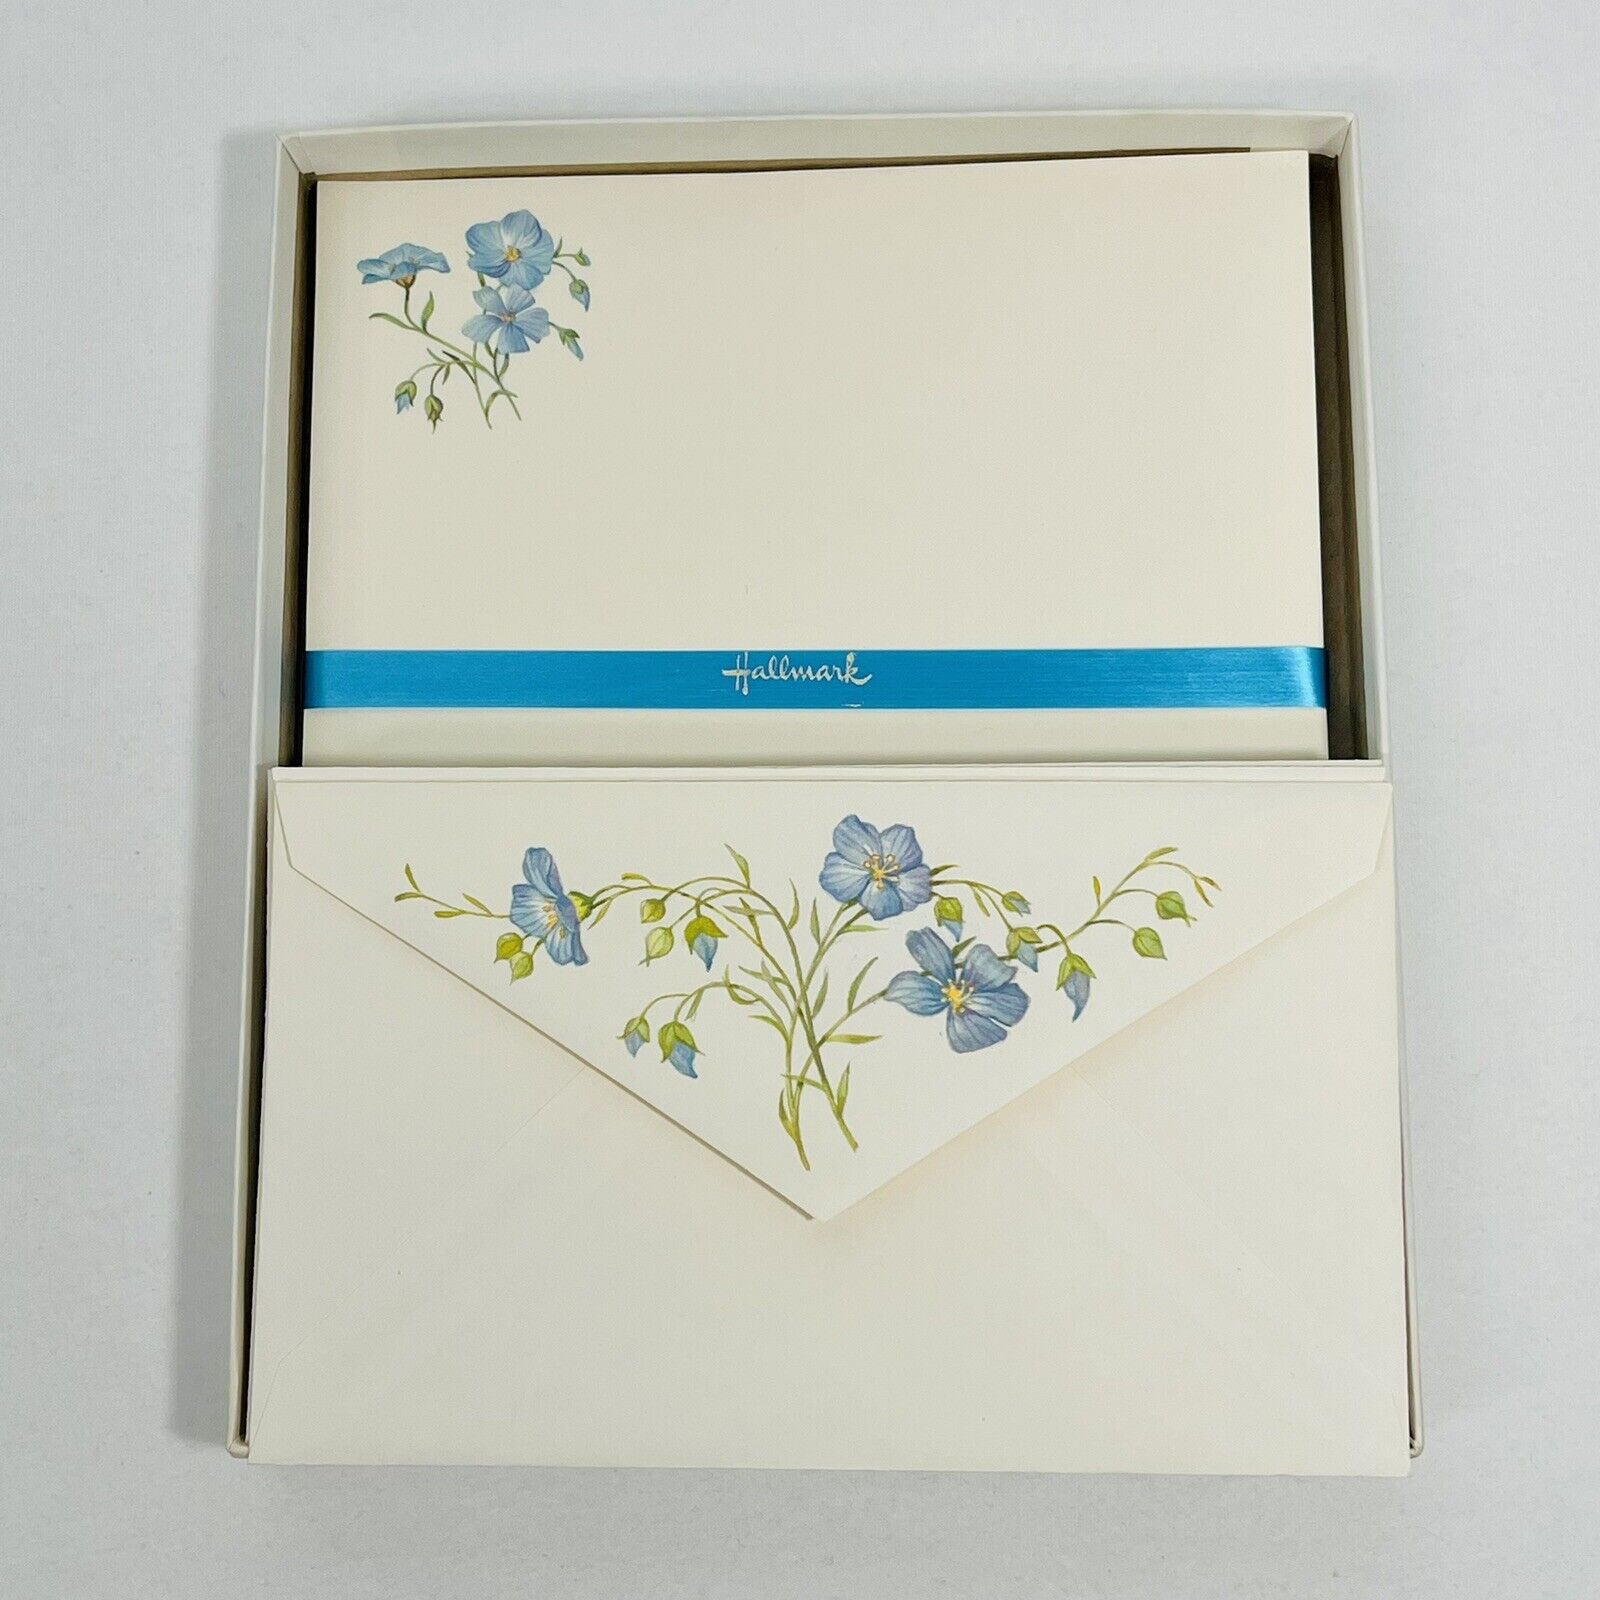 Hallmark Stationary Set Blue Phlox Flower 34 Sheets 18 Envelopes Scented Vintage